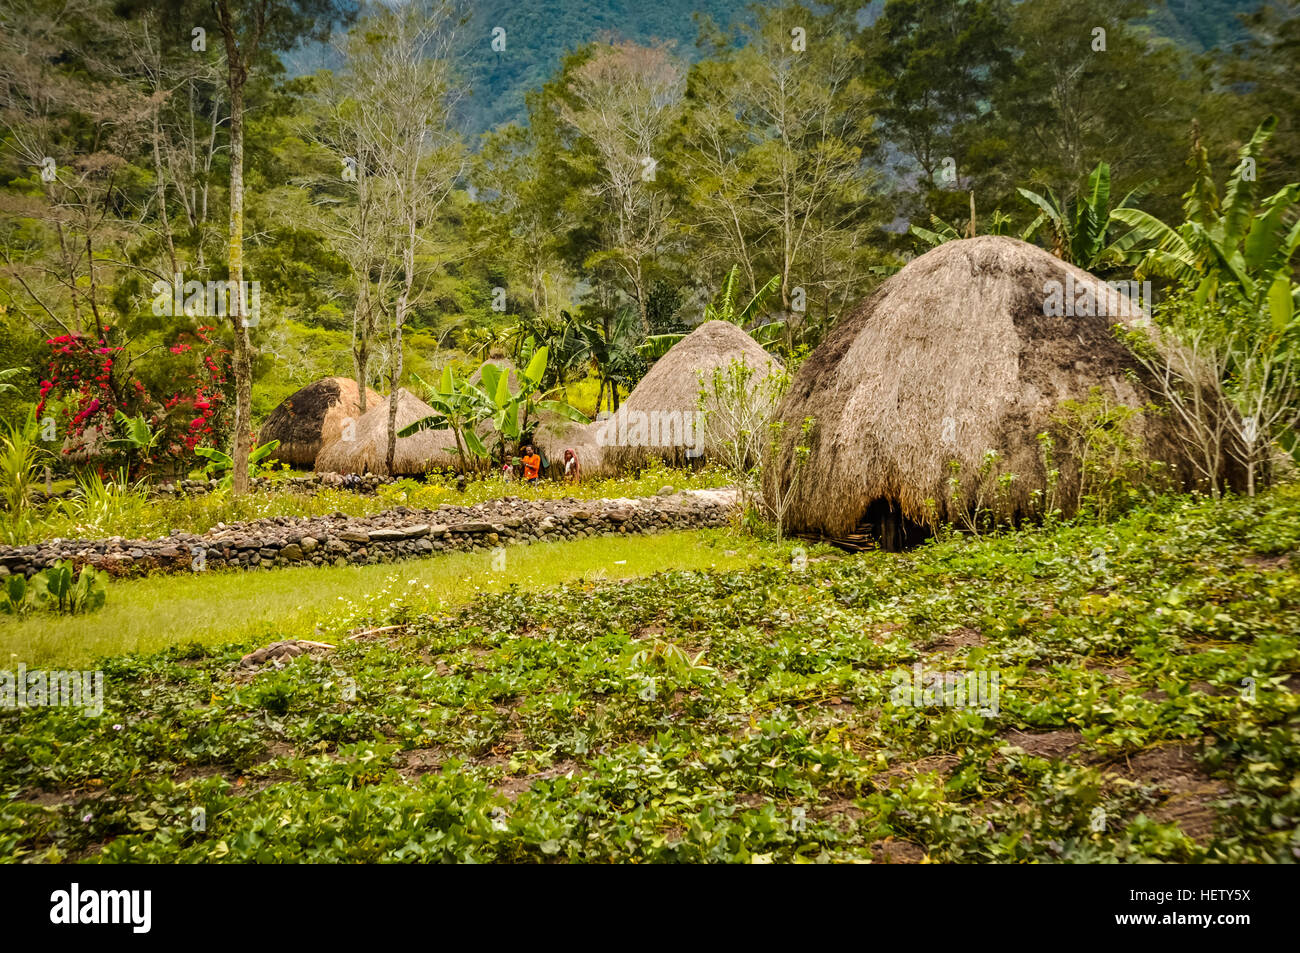 Foto von traditionellen Stroh Häuser mit Gärten in Dani Schaltung in der Nähe von Wamena, Papua, Indonesien. In dieser Region kann man nur Menschen aus isolierten l treffen. Stockfoto